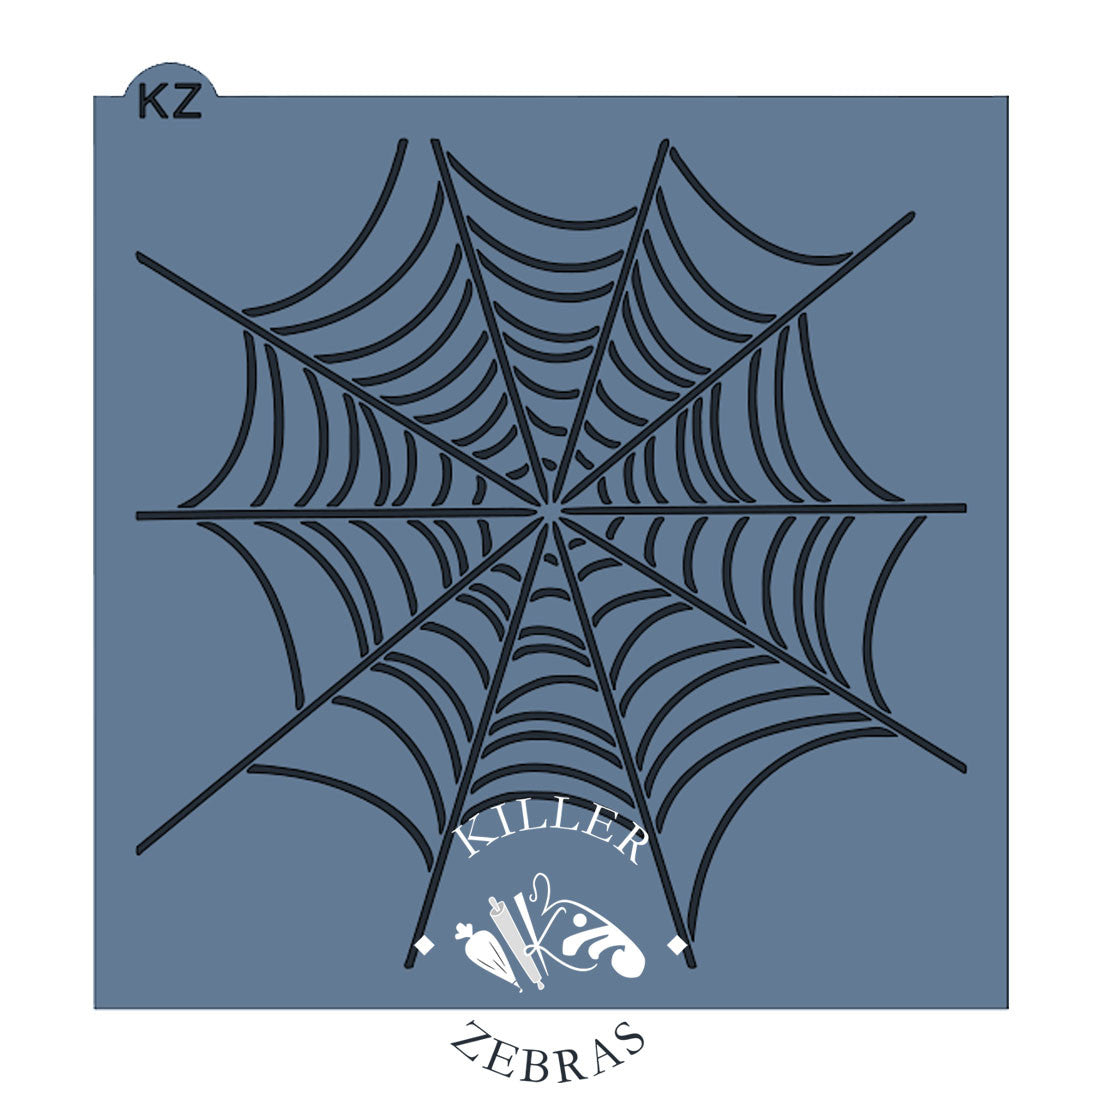 Spiderweb Stencil